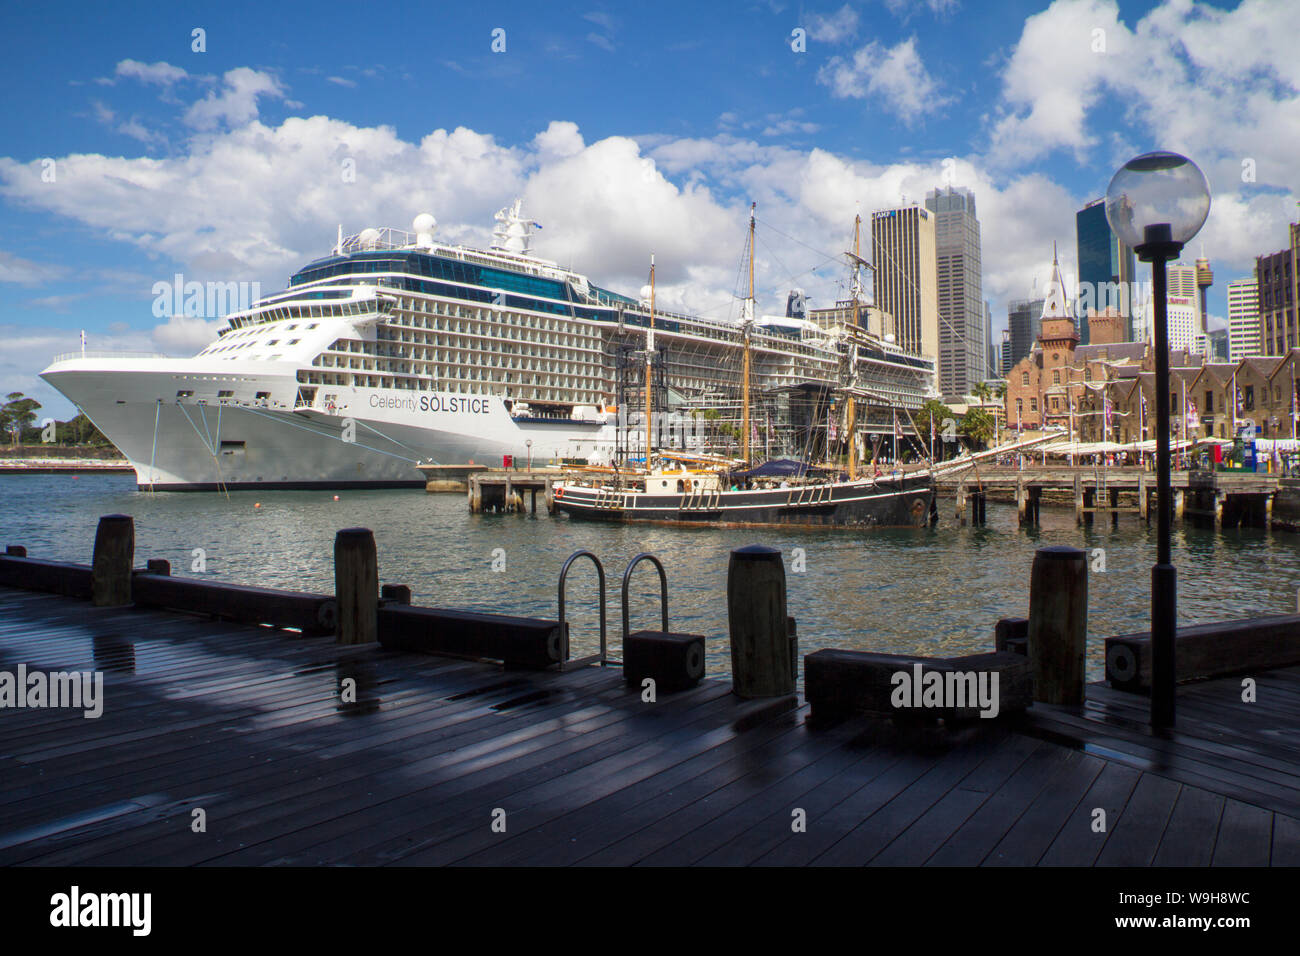 Sydney, Australien - 7. April 2013: Kreuzfahrtschiff Celebrity Solstice im Hafen von Sydney. Die sity ist ein beliebter Kreuzfahrt Ziel. Stockfoto